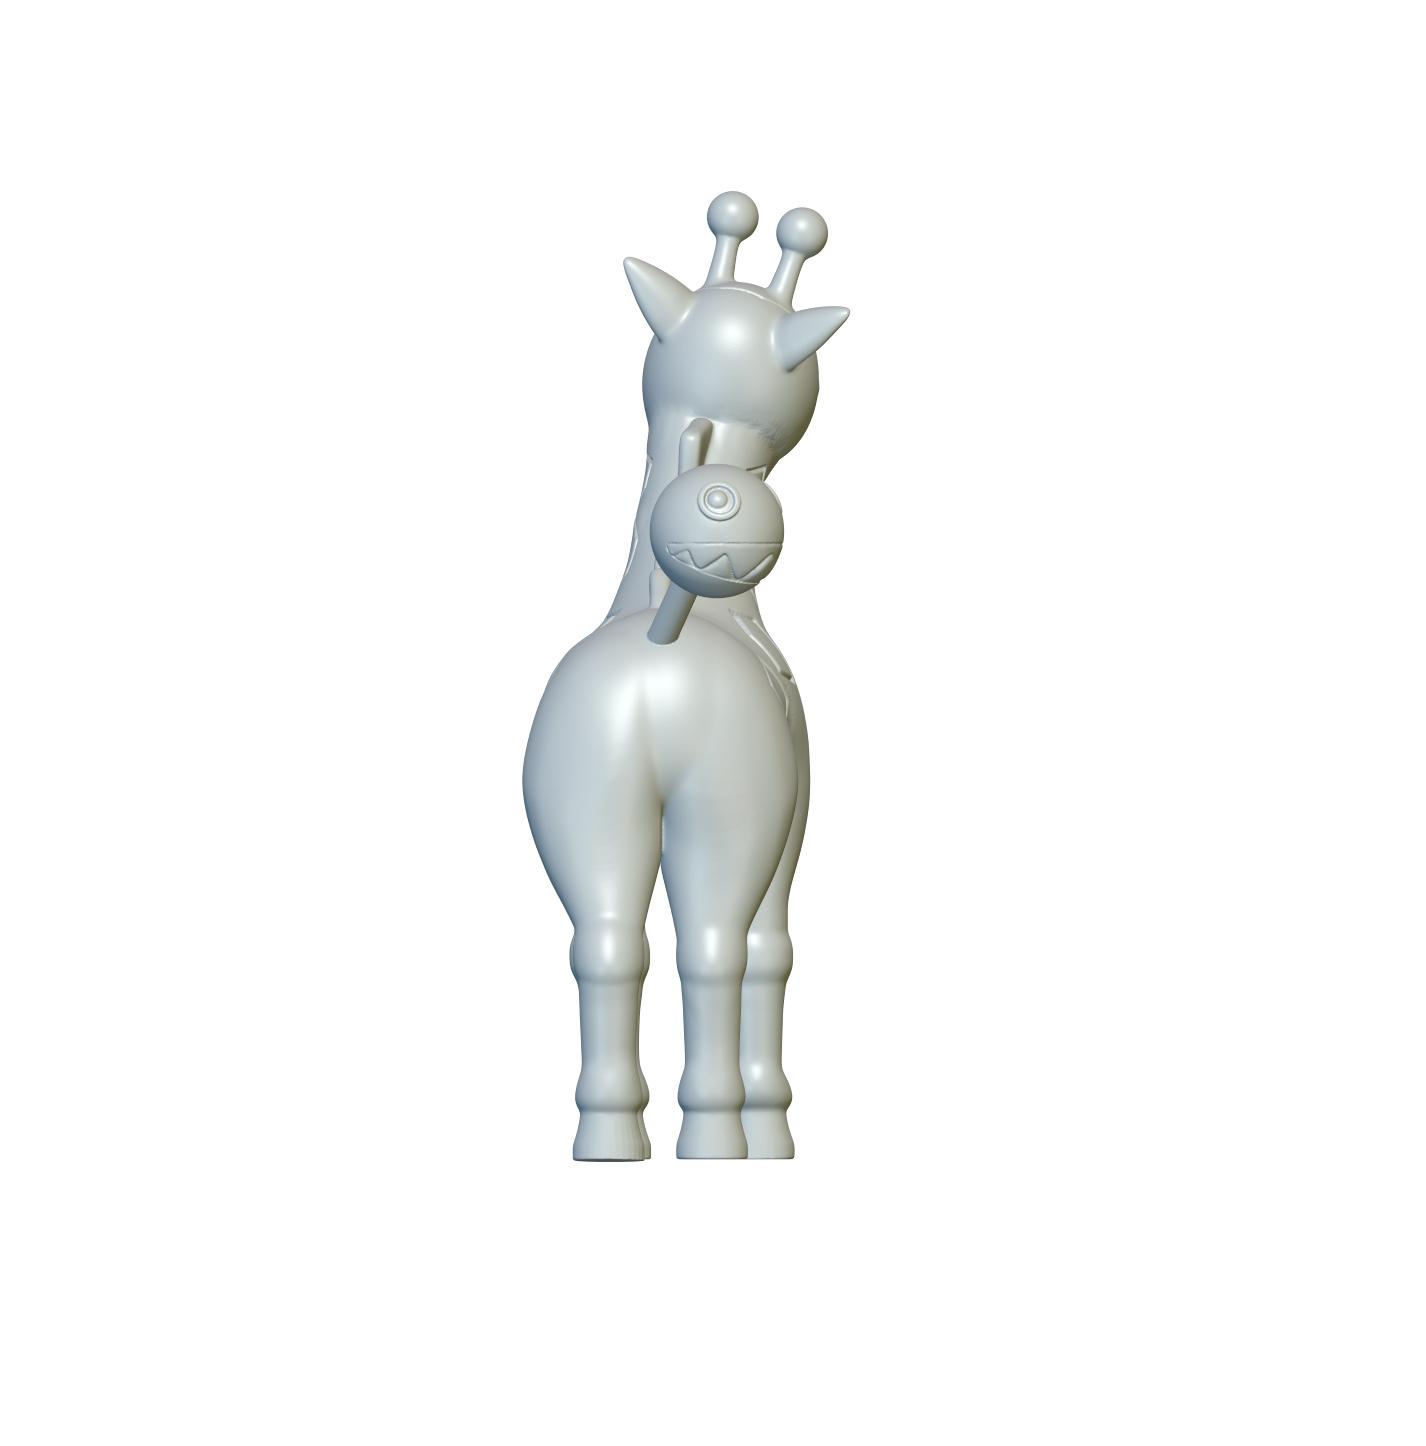 Pokemon Girafarig #203 - Optimized for 3D Printing 3d model